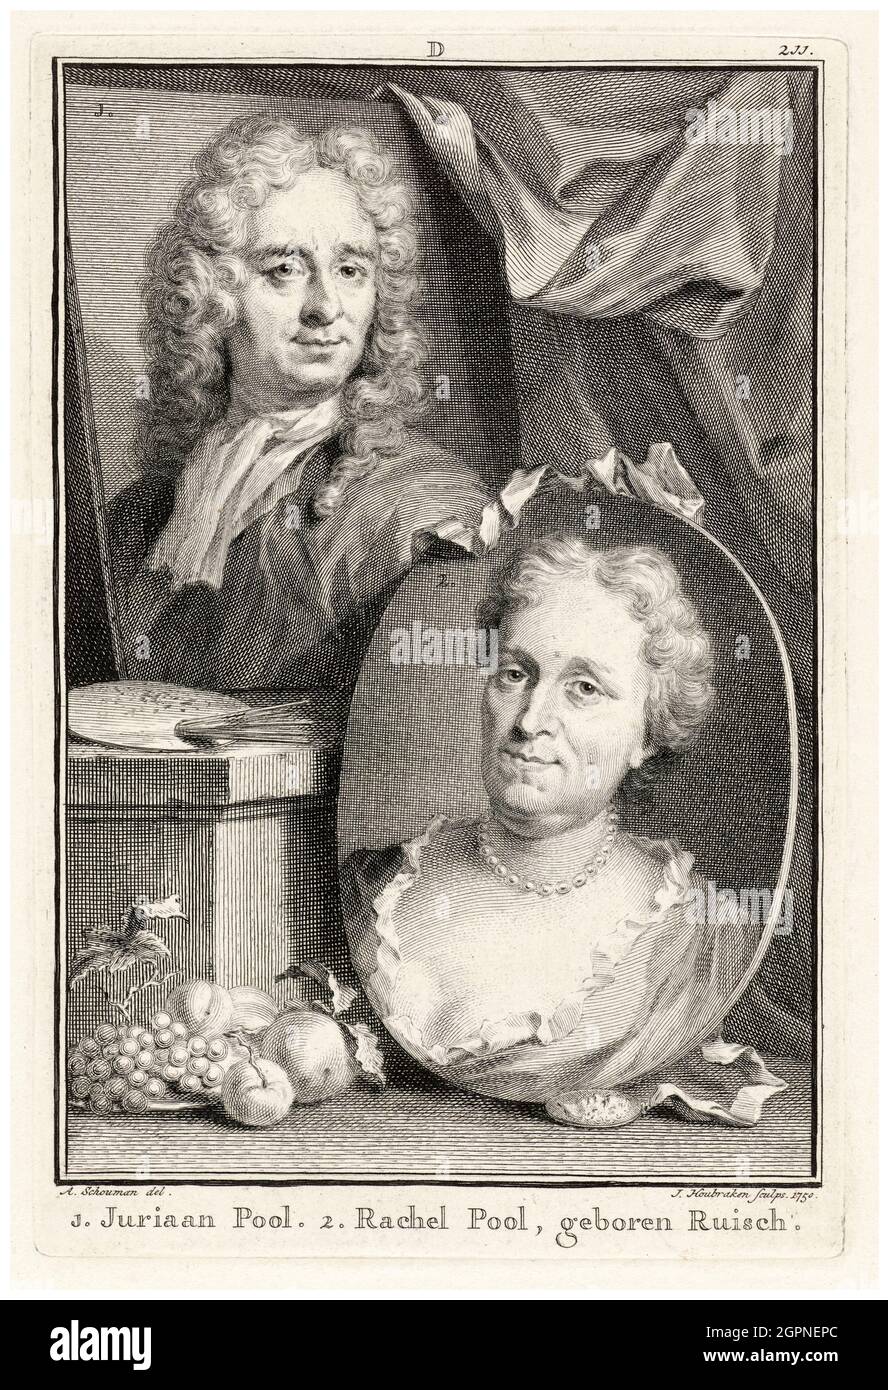 Rachel Pool-Ruysch (Rachel Ruysch) (1664-1750), Dutch Still Life painter and her husband, artist Juriaen Pool (1666-1745), portrait engraving by Jacob Houbraken after Aert Schouman, 1750 Stock Photo